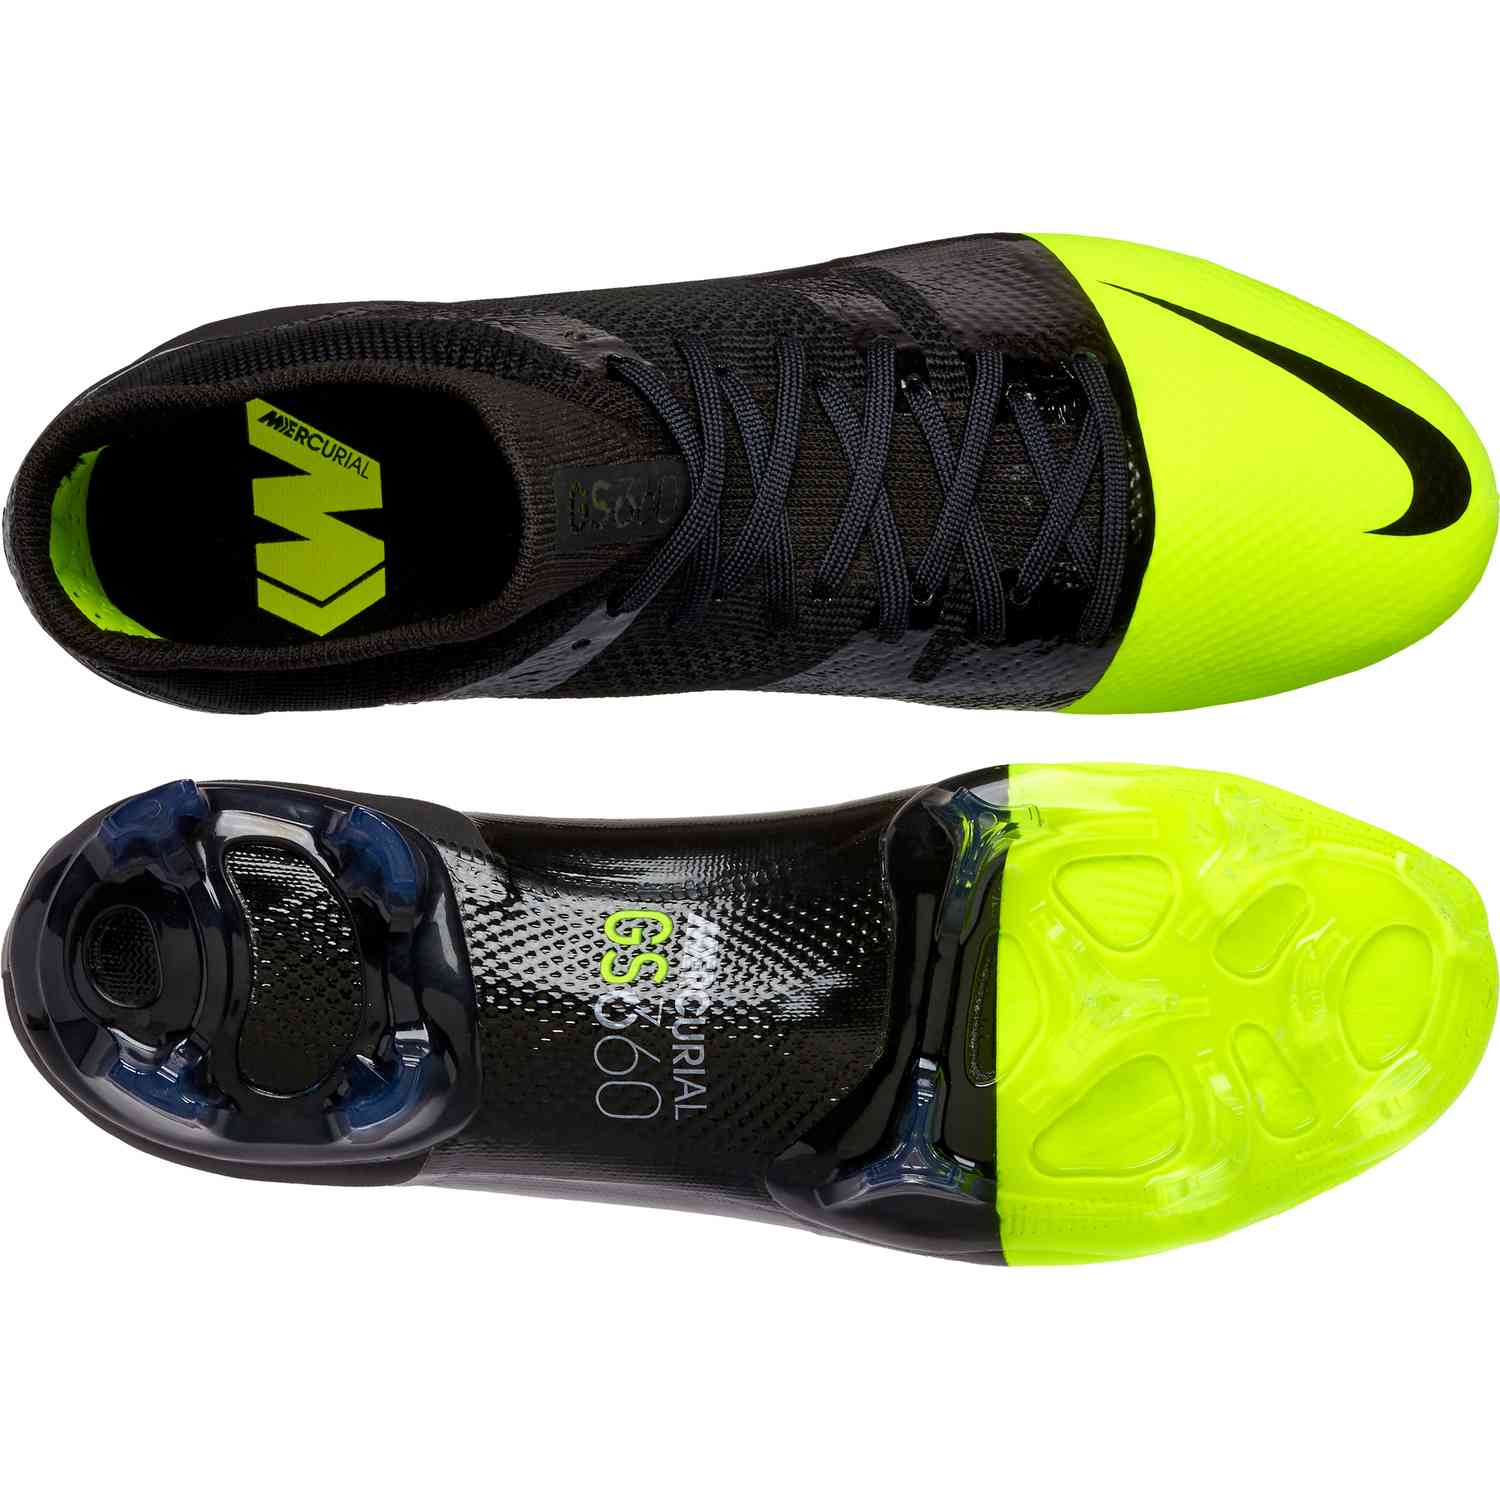 Nike Mercurial Greenspeed 360 - Nike GS 